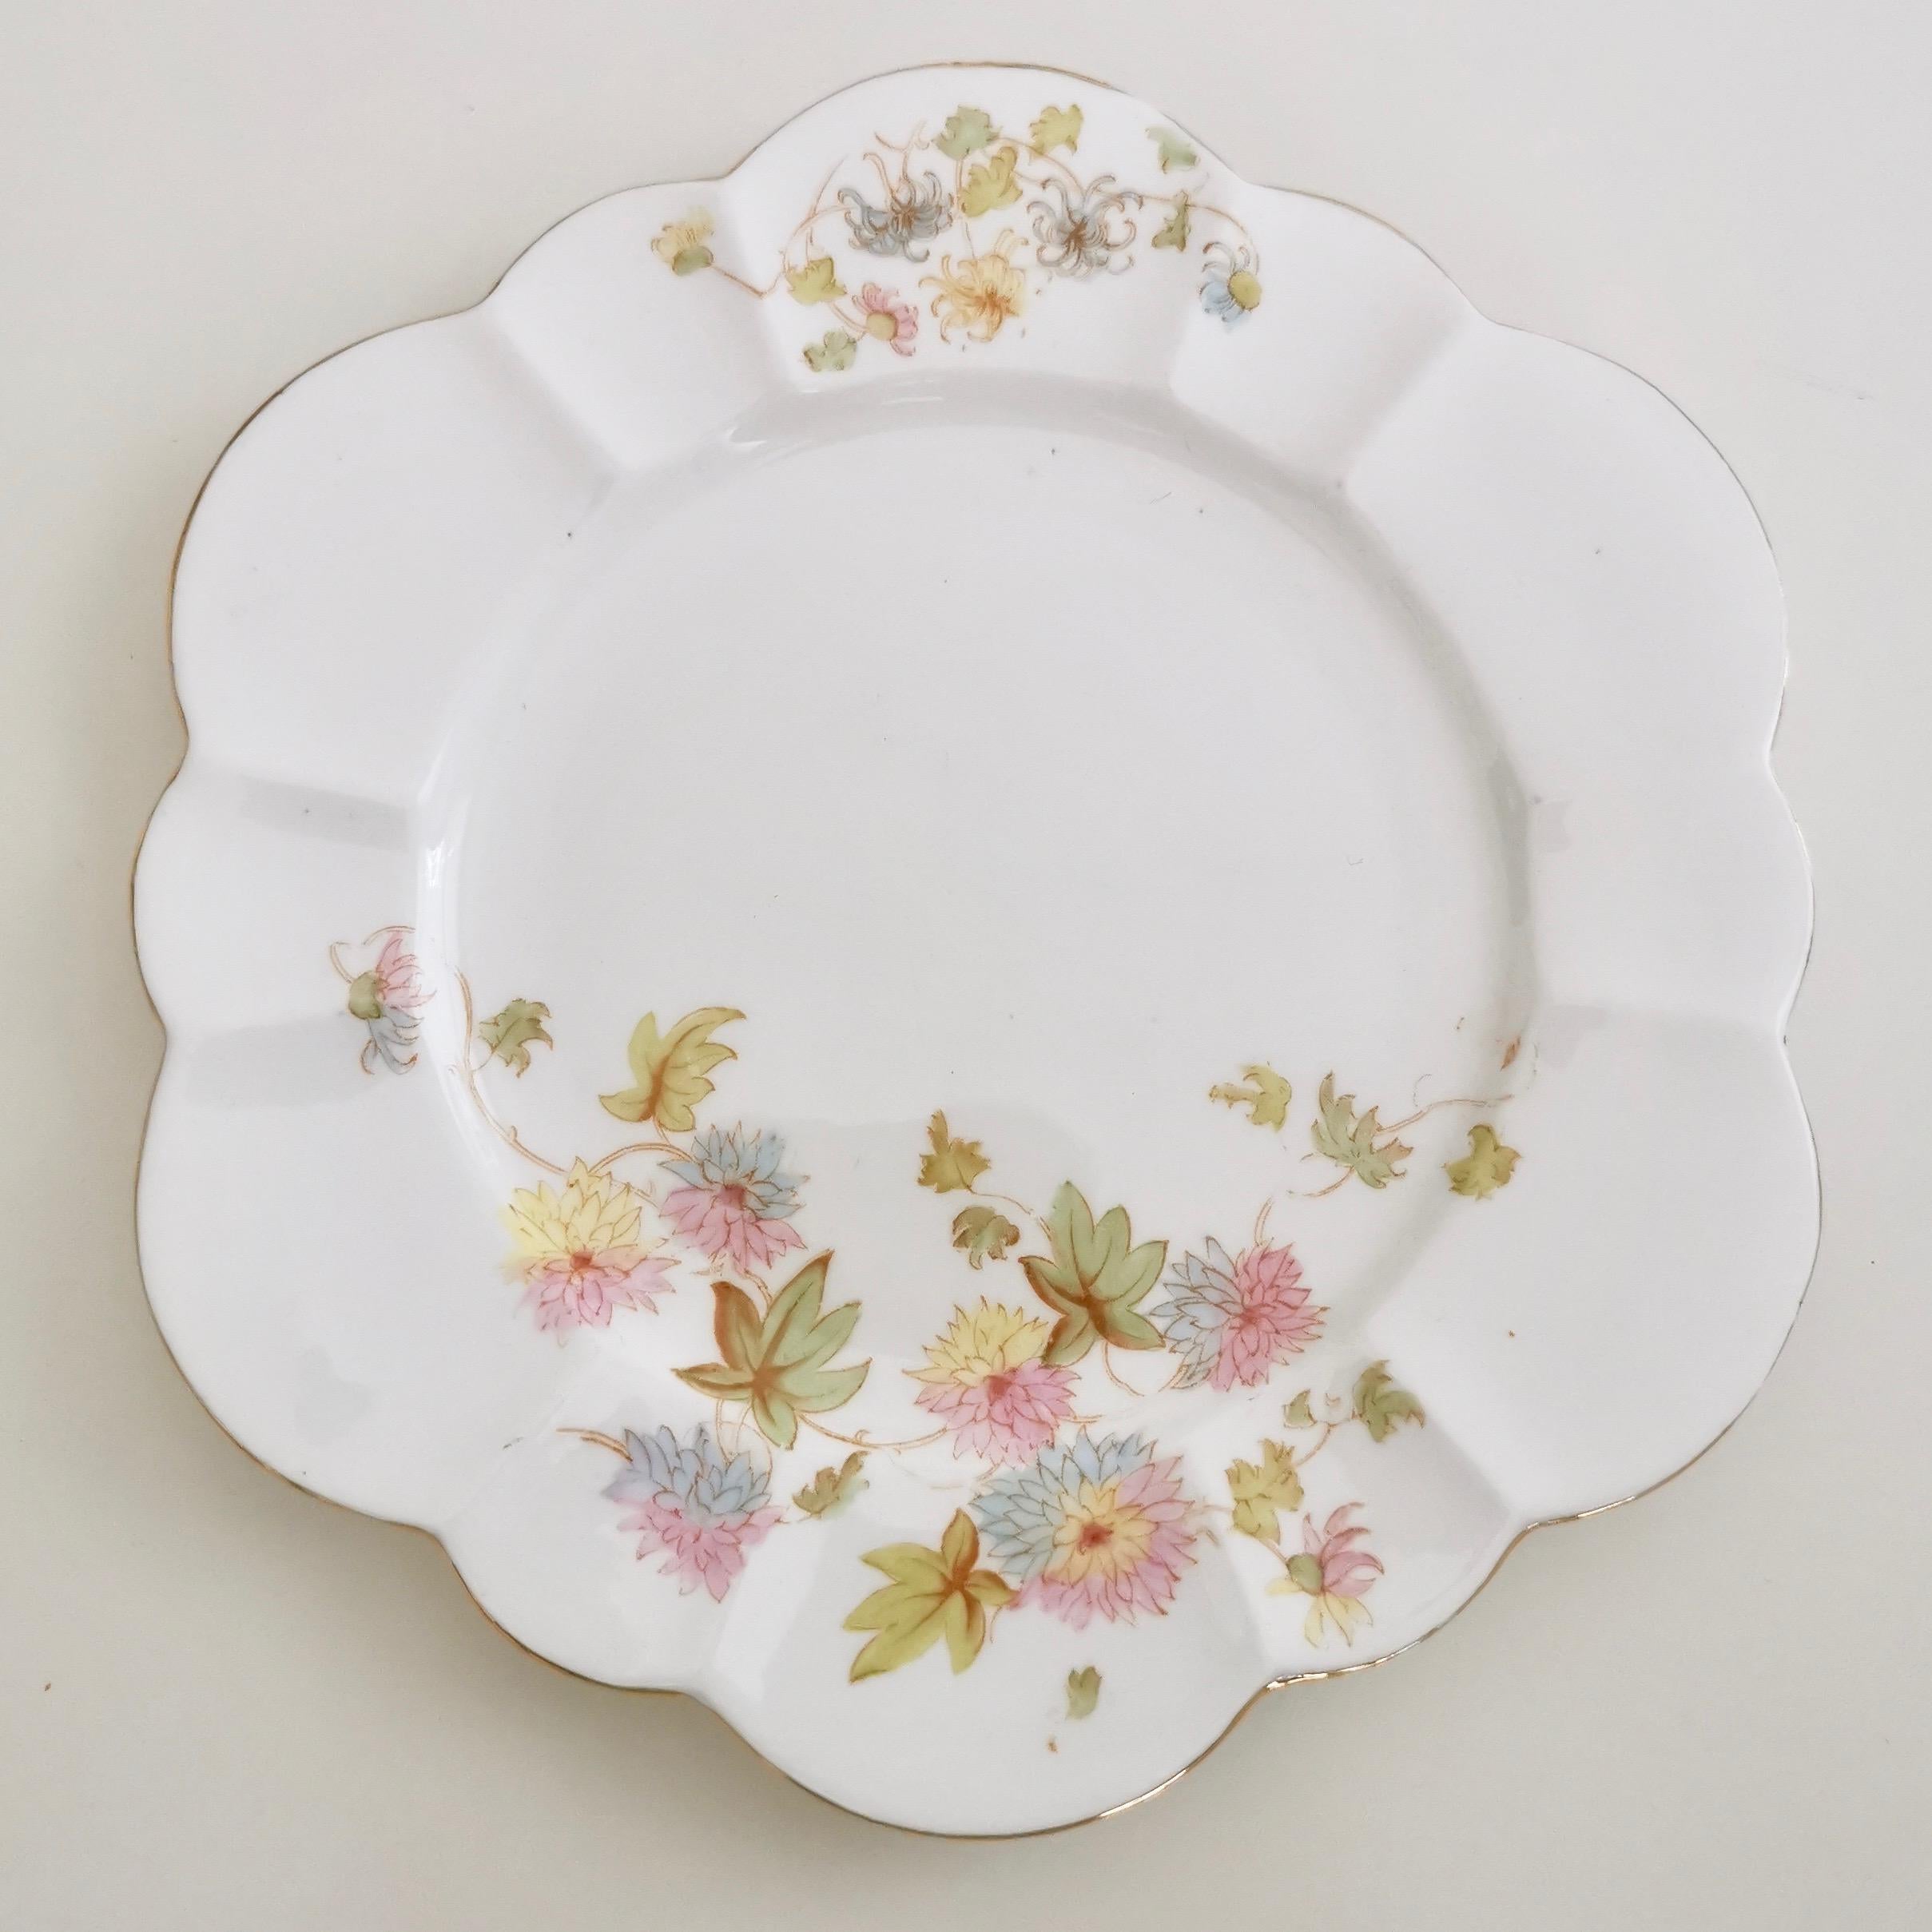 Wileman Porcelain Tea Set, Chrysanthemum, Pastel Colors, Art Nouveau, 1896 1